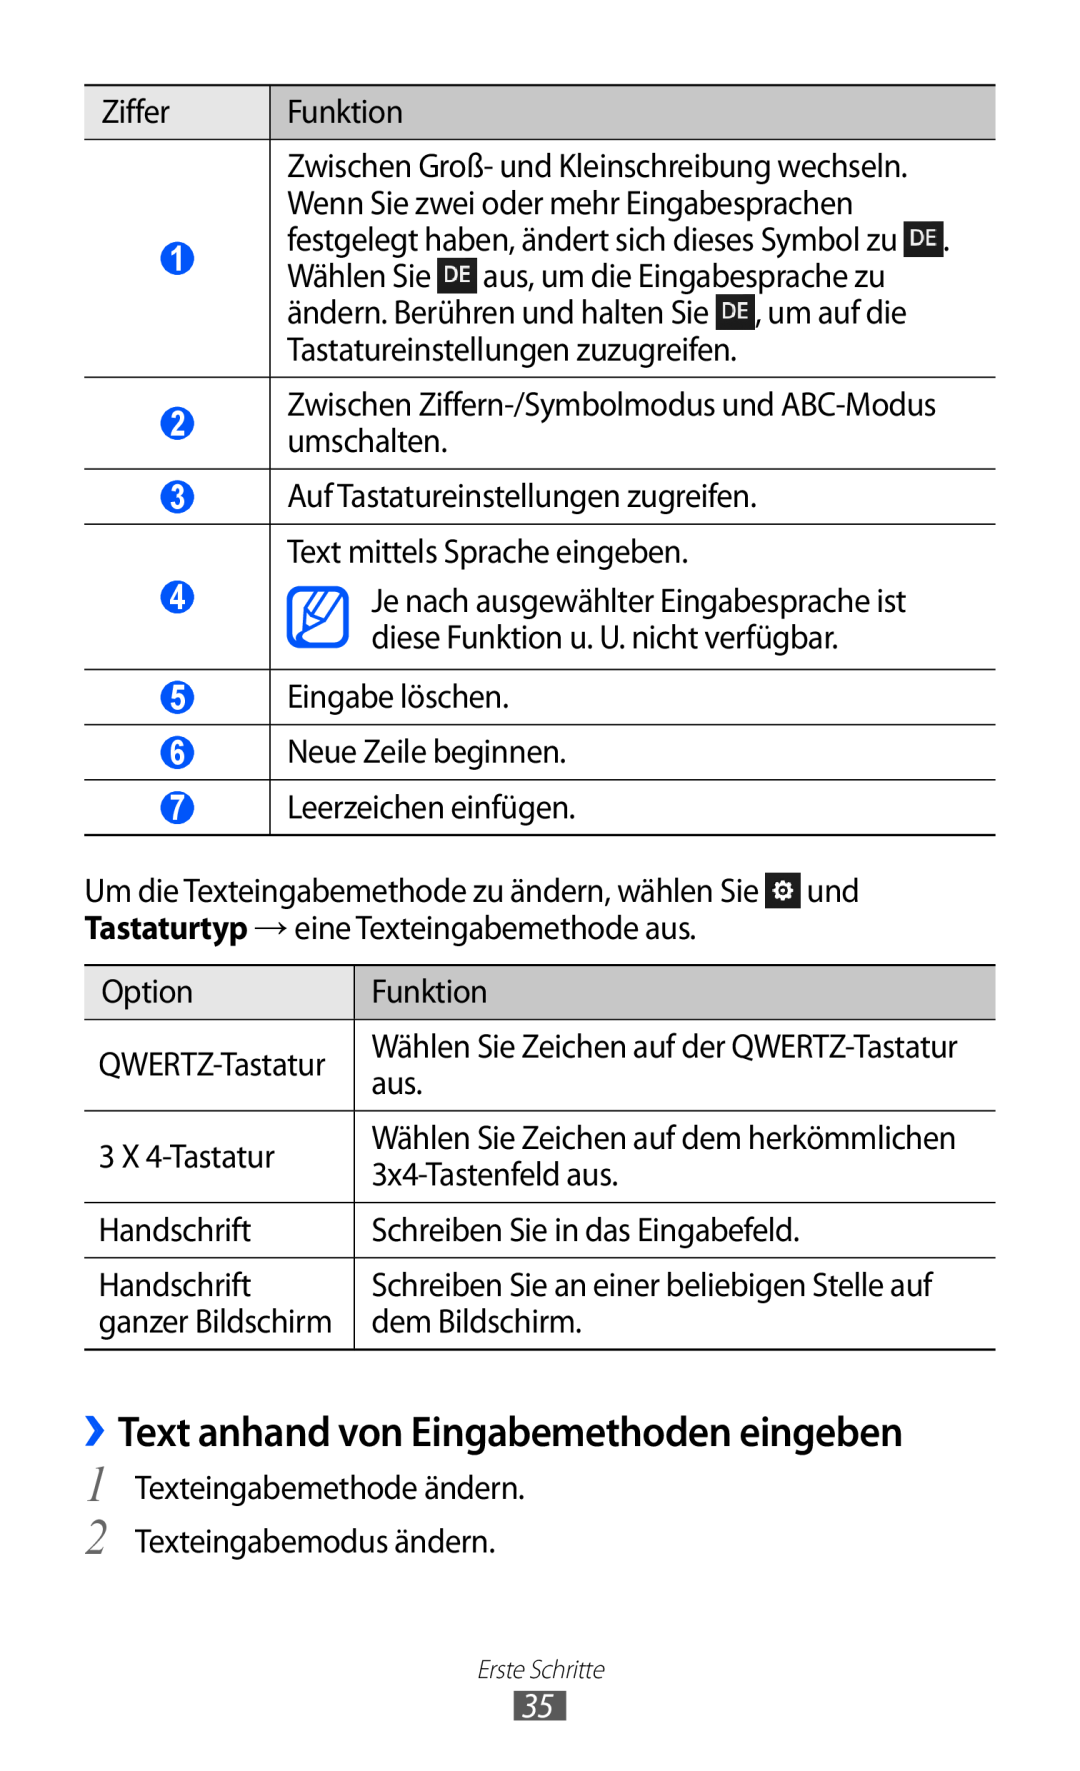 Samsung GT-S8600HKADTM manual ››Text anhand von Eingabemethoden eingeben, Wählen Sie Zeichen auf dem herkömmlichen 